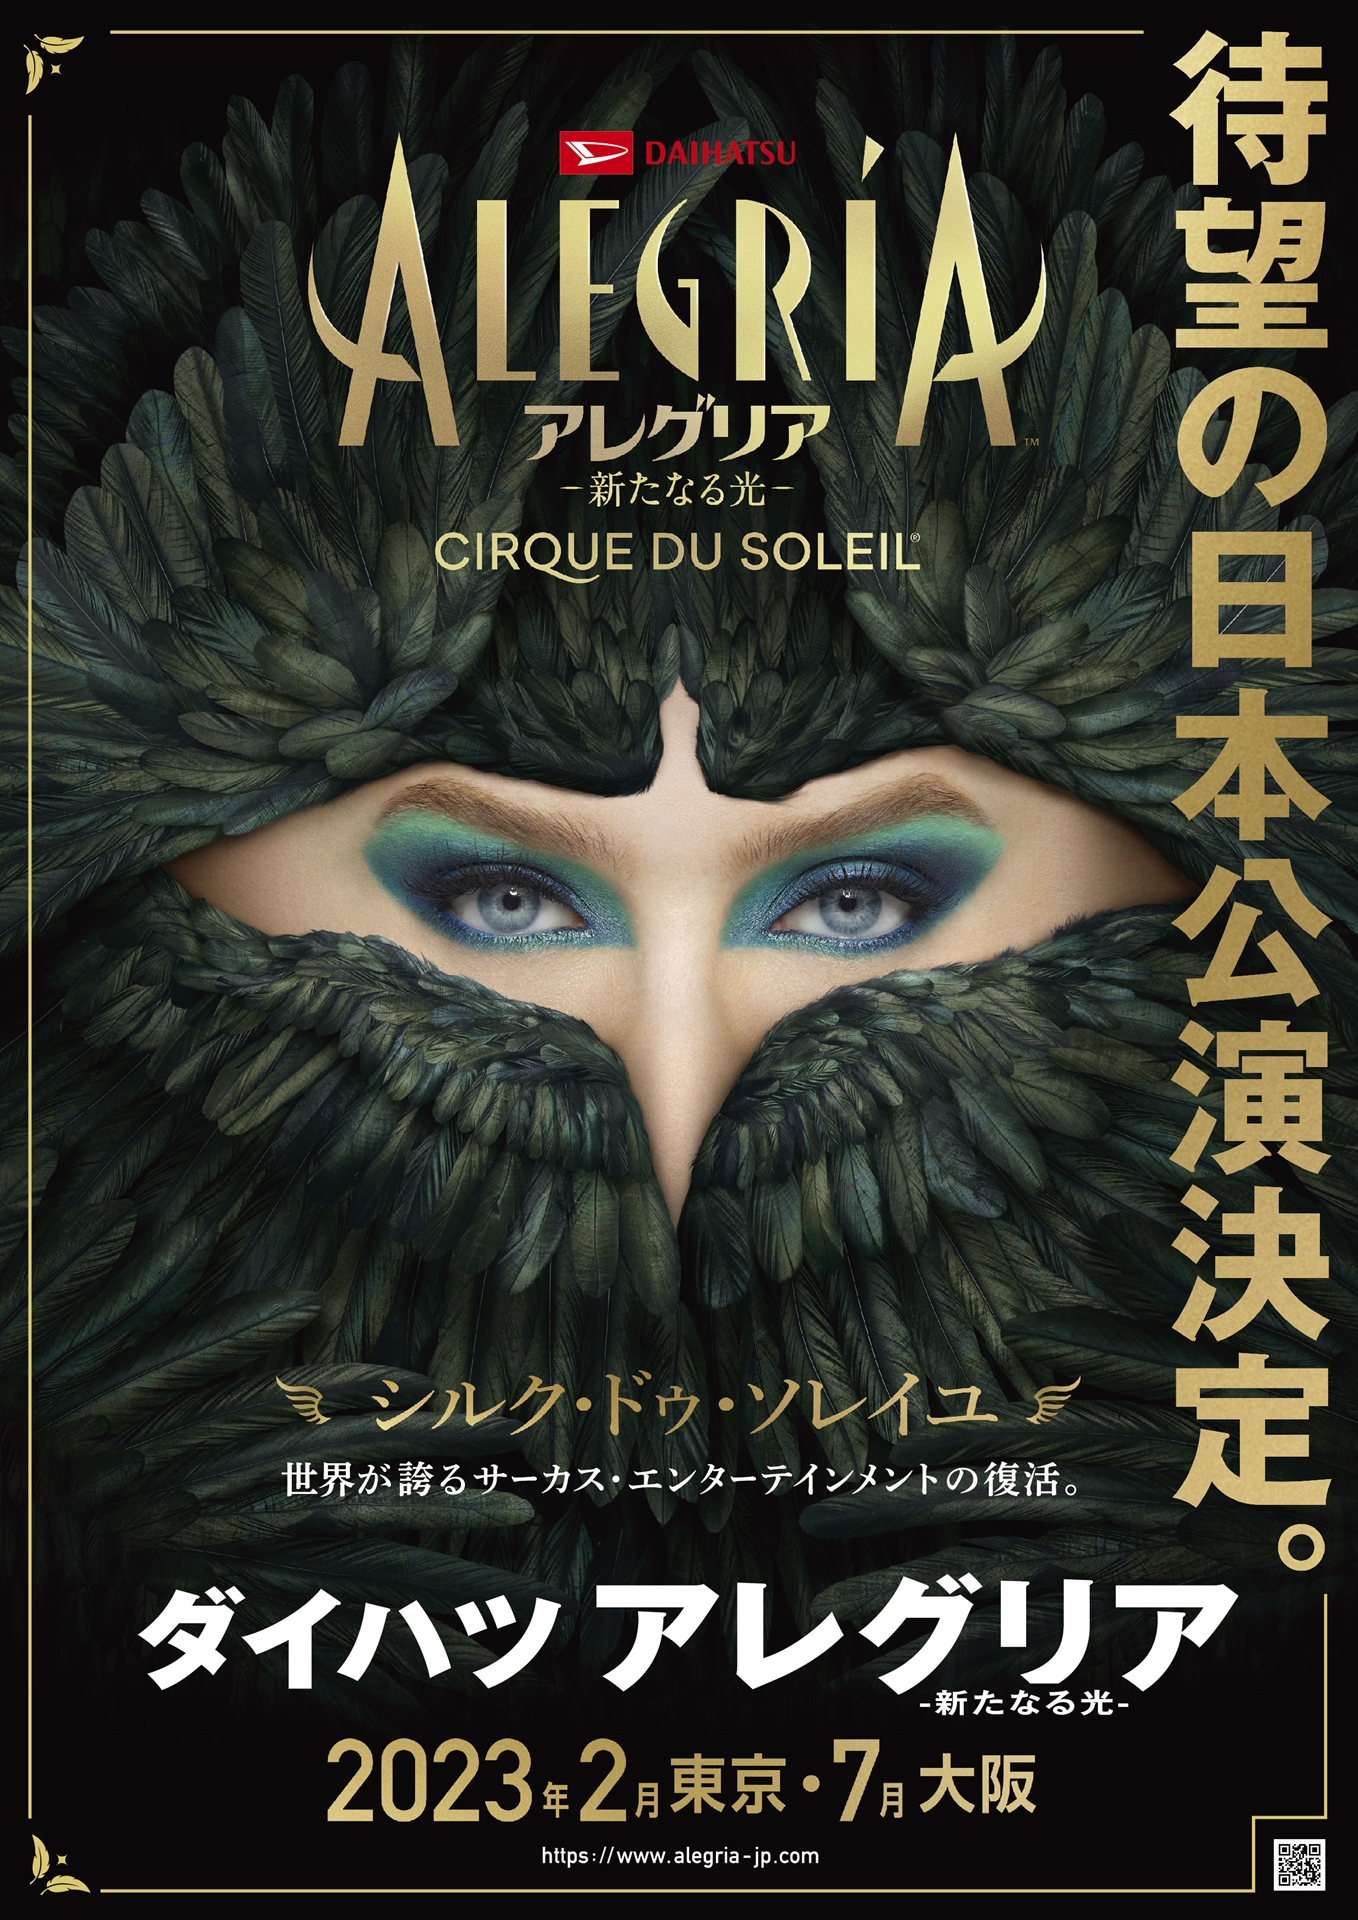 シルク・ドゥ・ソレイユの「アレグリア」、2023年2月より日本公演決定 ...